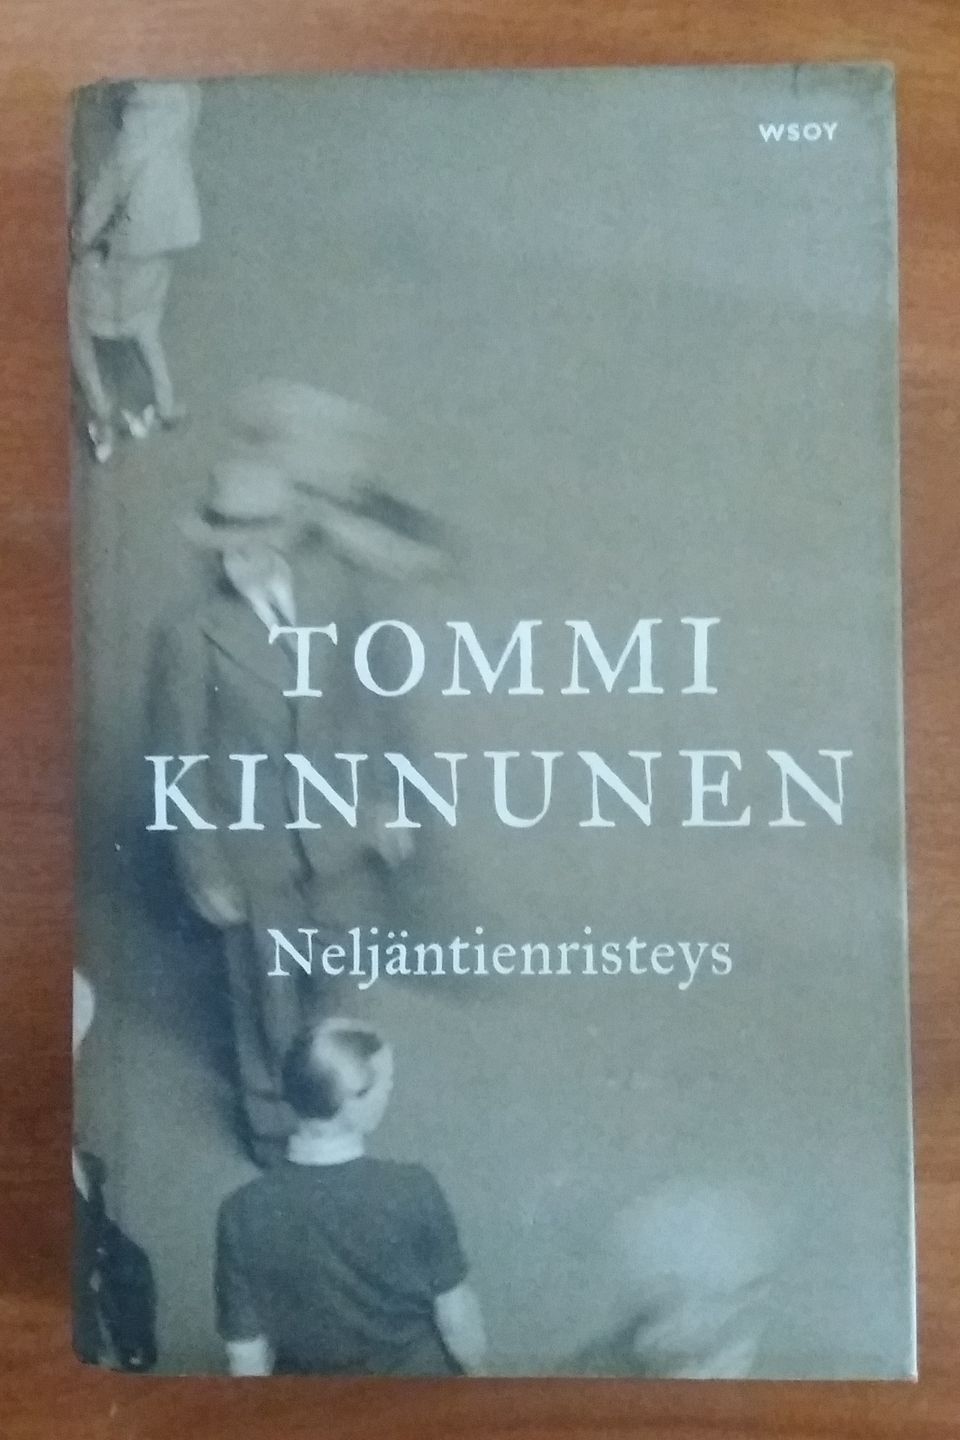 Tommi Kinnunen NELJÄNTIENRISTEYS Wsoy 2014